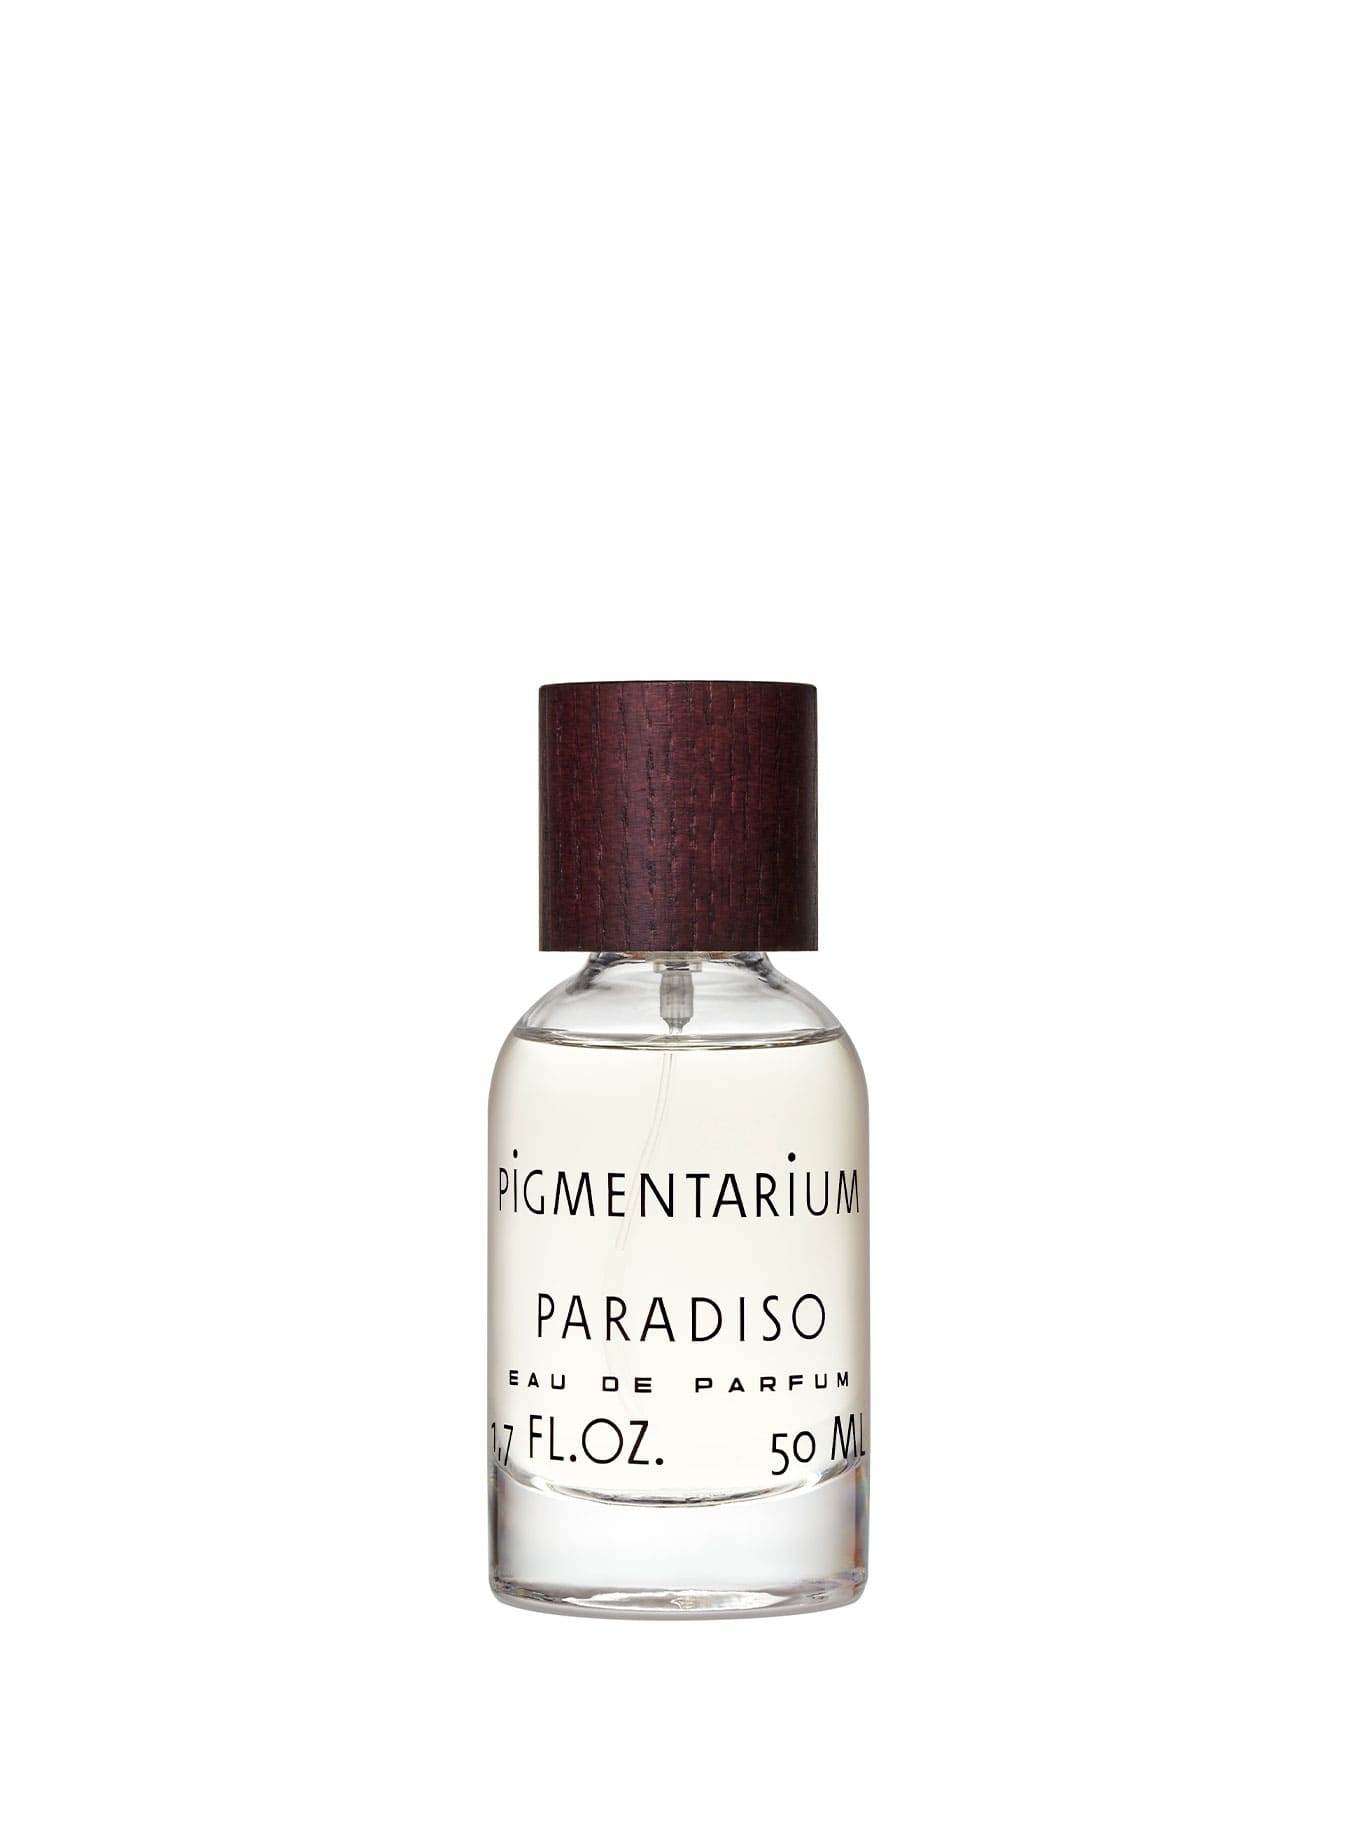 Frasco de Eau de Parfum Paradiso de Pigmentarium. Una fragancia que rememora unas vacaciones en la Cote d'Azur, con notas frescas de pomelo y mandarina